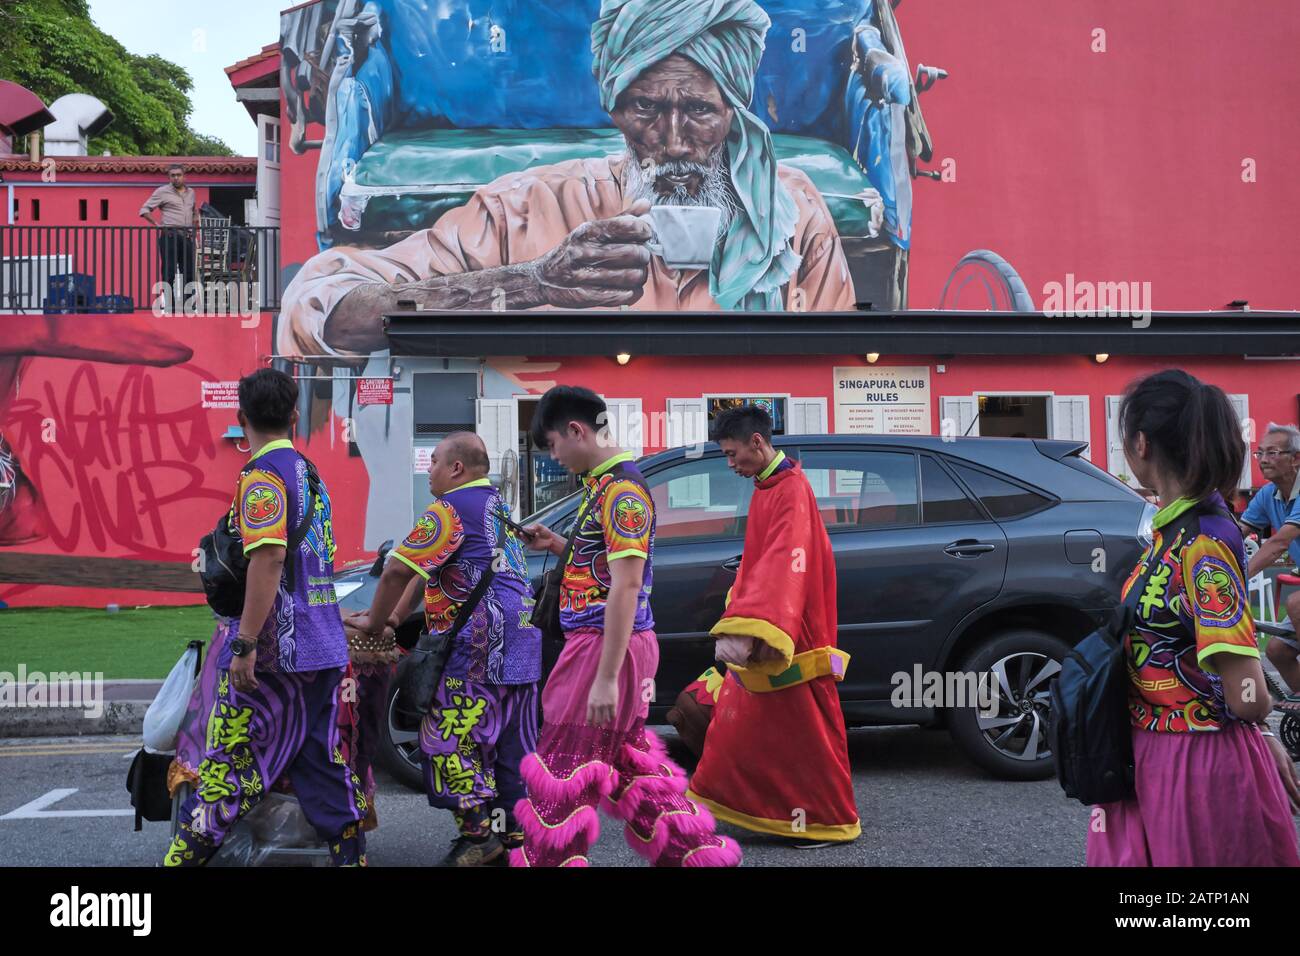 Une troupe chinoise de danse du Dragon traverse un mur rouge avec une peinture murale représentant un chauffeur de pousse-pousse indien à boire du thé ; dans La région De Little India, à Singapour Banque D'Images